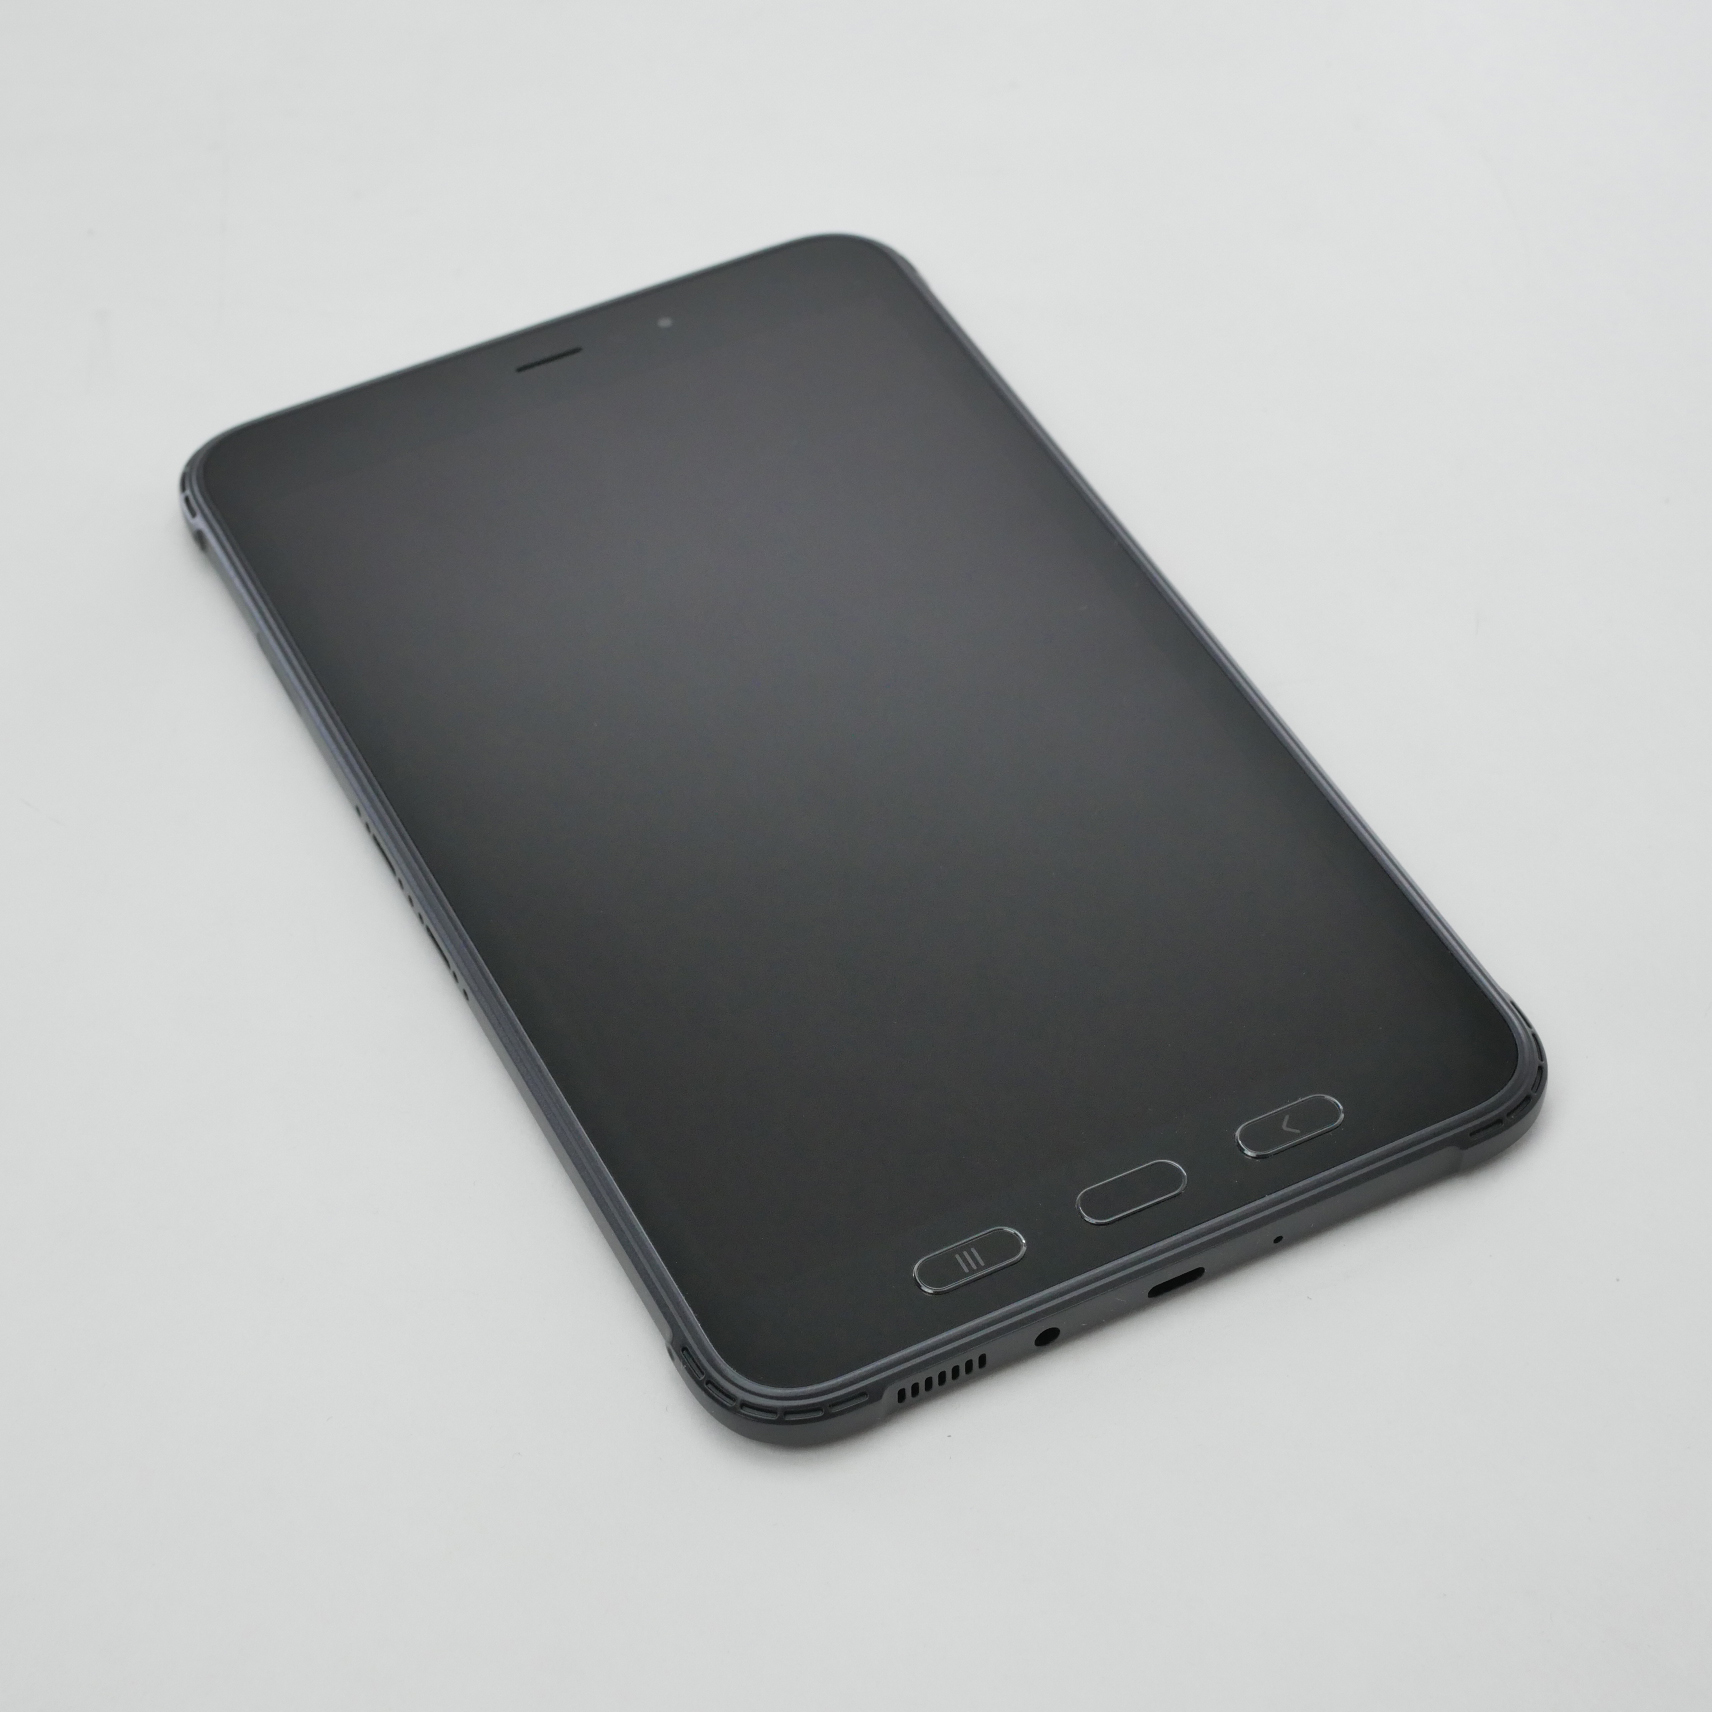 Samsung Galaxy Tab Active 3 8.0" Wi-Fi LTE Black 64GB SM-T577U/DS SM-T577UZKDN14